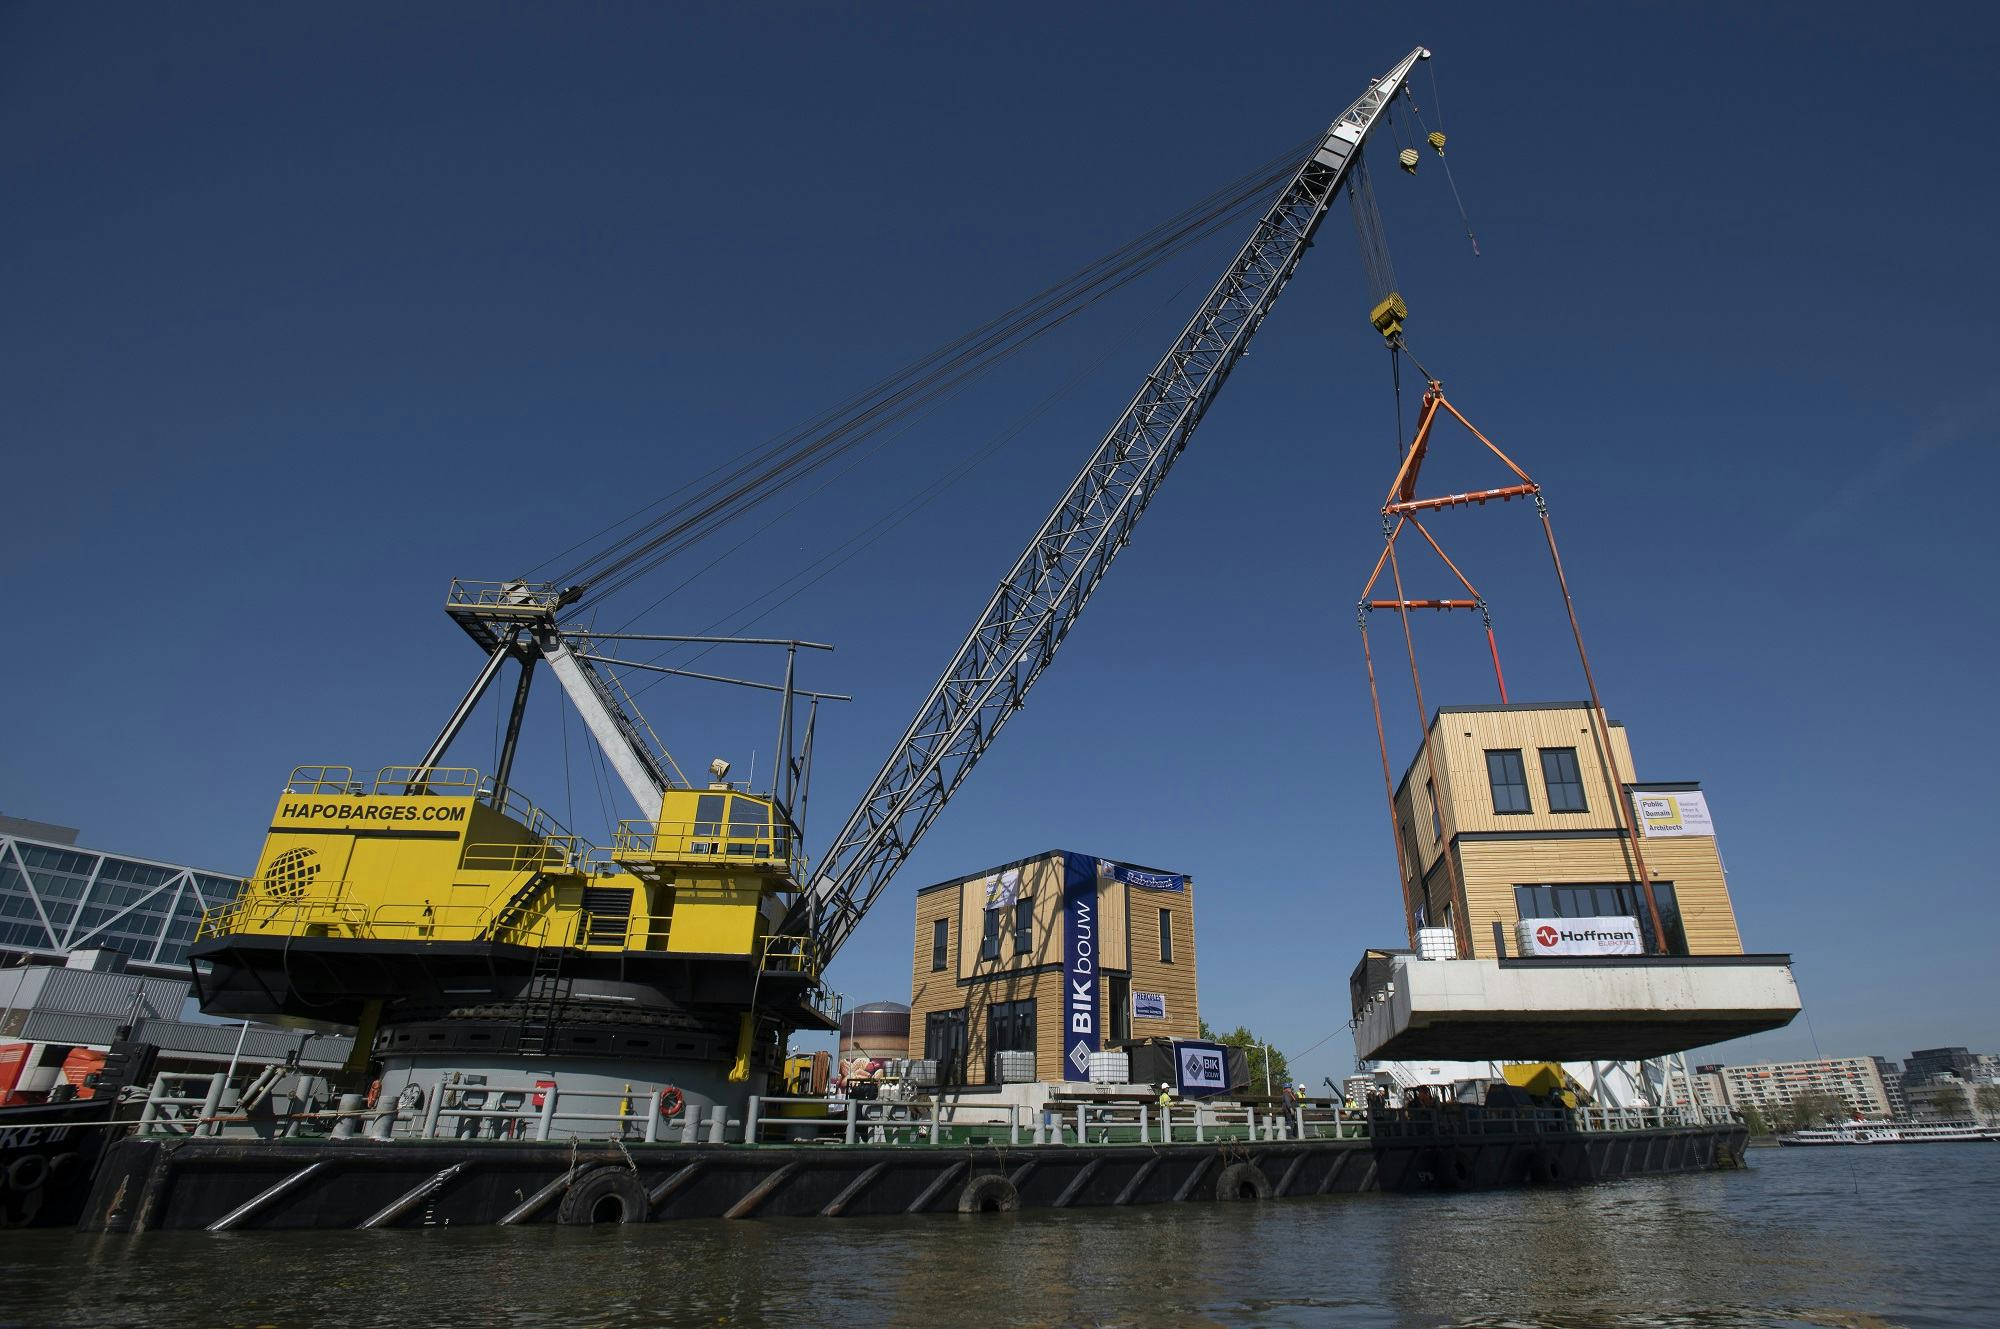 Geslaagde tewaterlating eerste Havenlofts in Nassauhaven Rotterdam